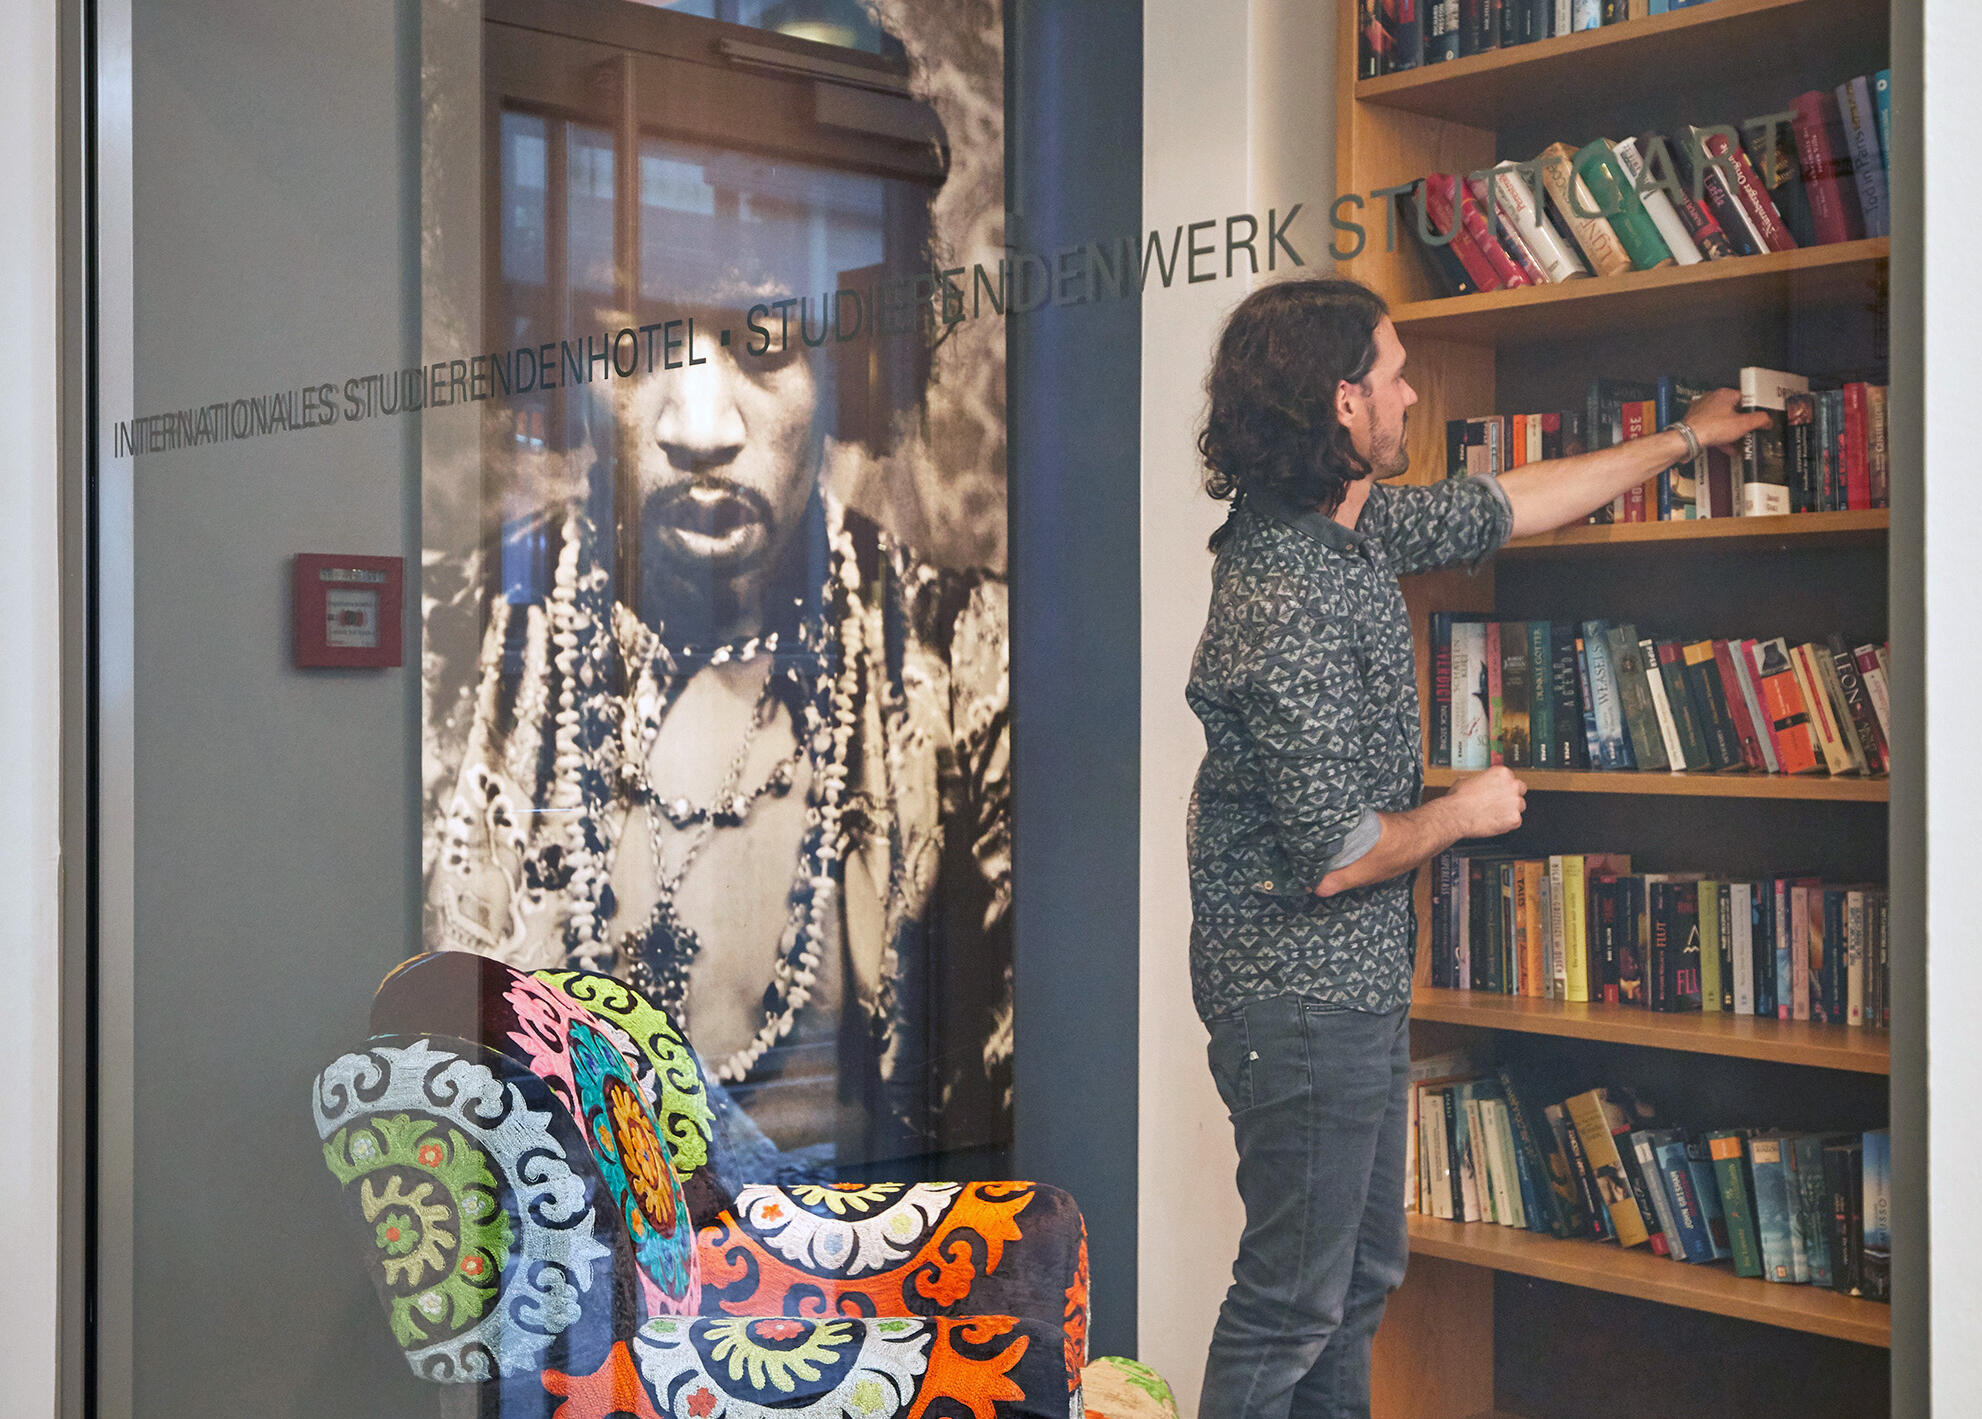 Ein Mann nimmt in der Leseecke des Internationalen Studierendenhotel ein Buch aus dem Regal